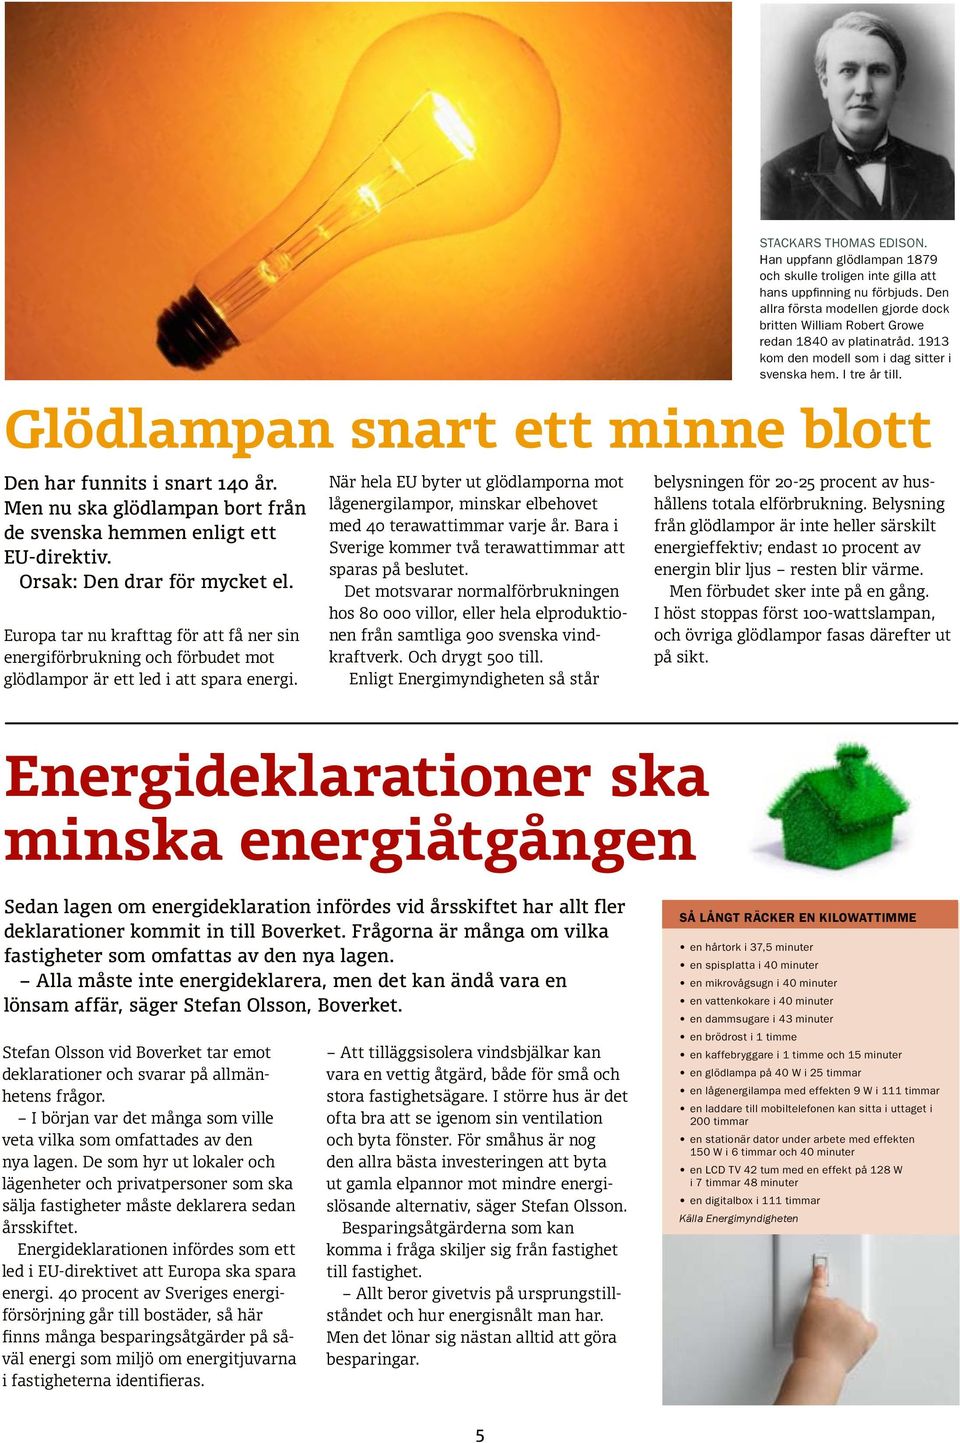 Glödlampan snart ett minne blott Den har funnits i snart 140 år. Men nu ska glödlampan bort från de svenska hemmen enligt ett EU-direktiv. Orsak: Den drar för mycket el.